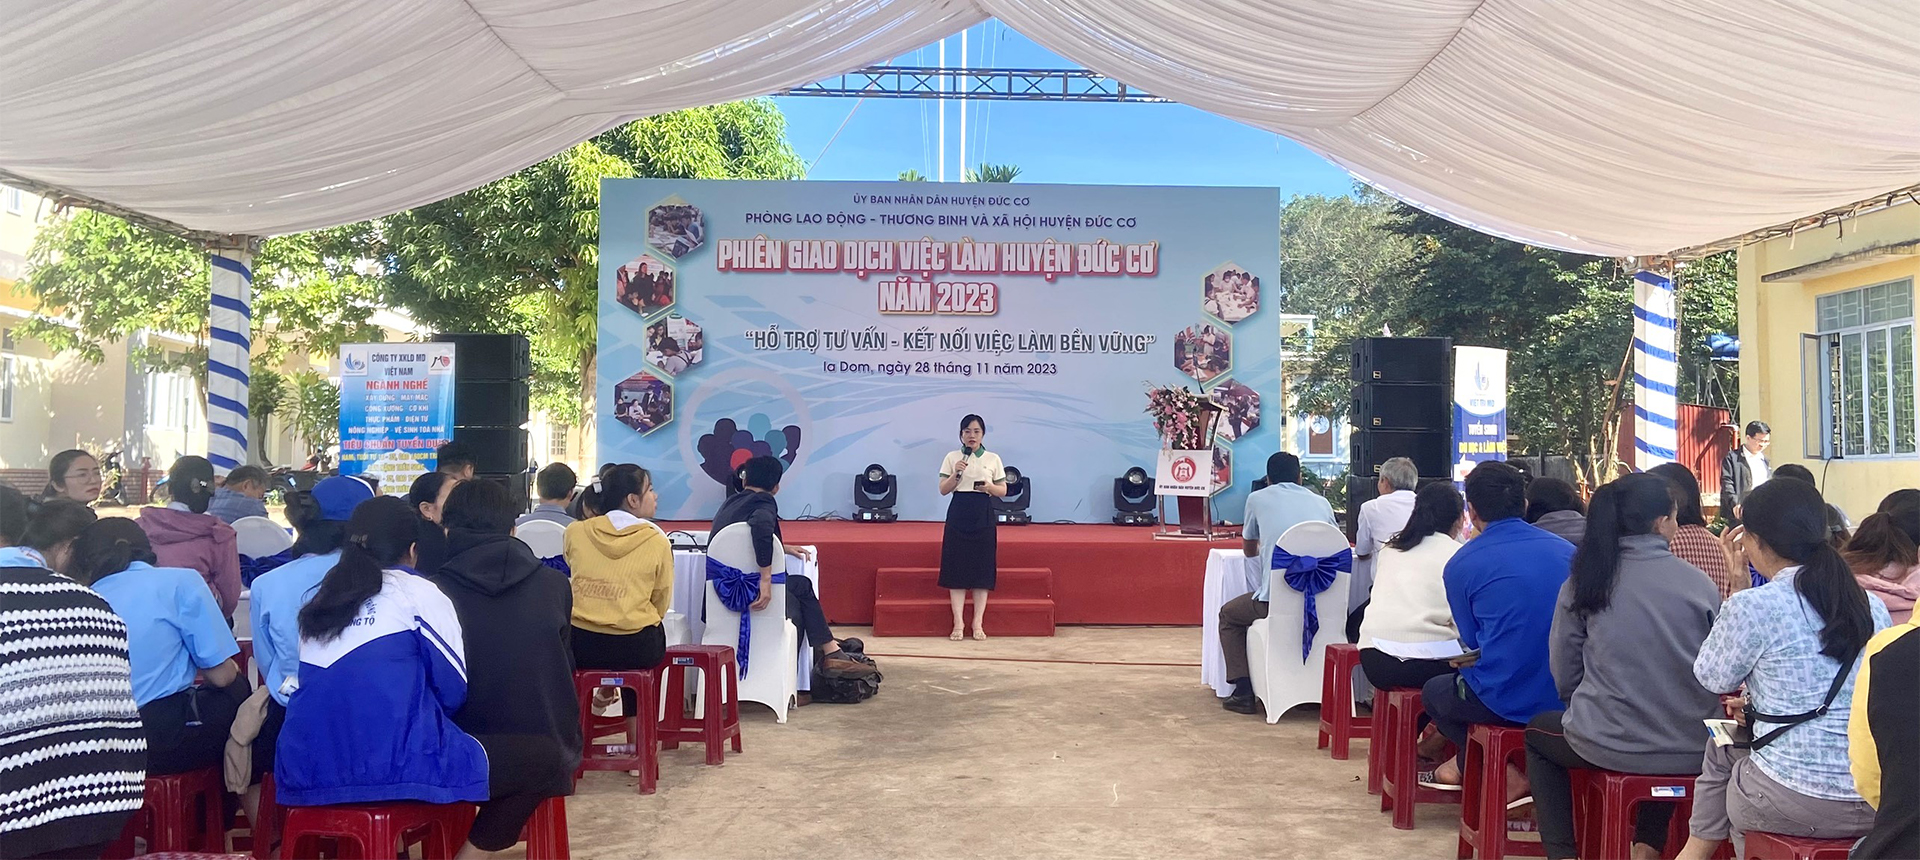 THACO AGRI tham gia các phiên giao dịch việc làm tại tỉnh Gia Lai và tỉnh Kon Tum